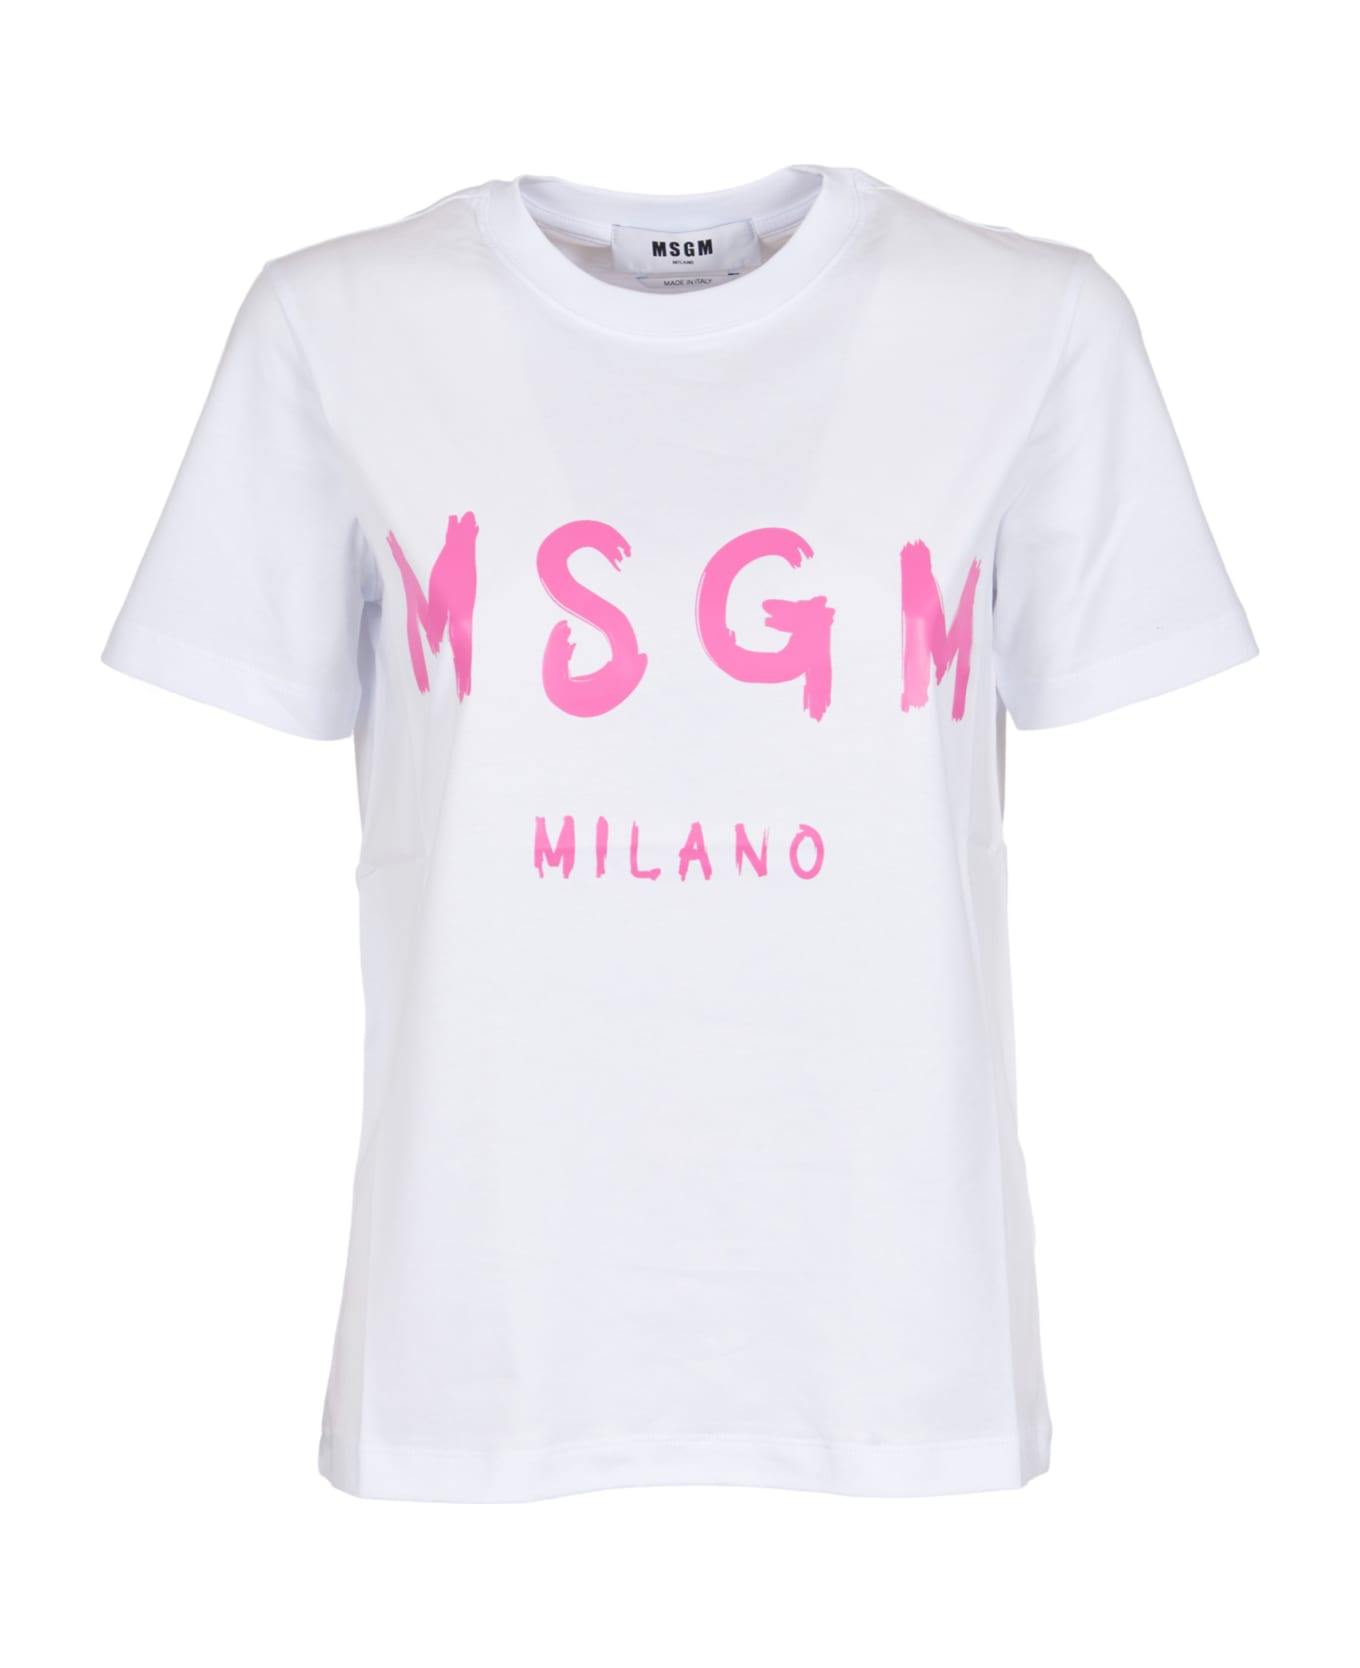 MSGM Milano T-shirt - Optical White Tシャツ